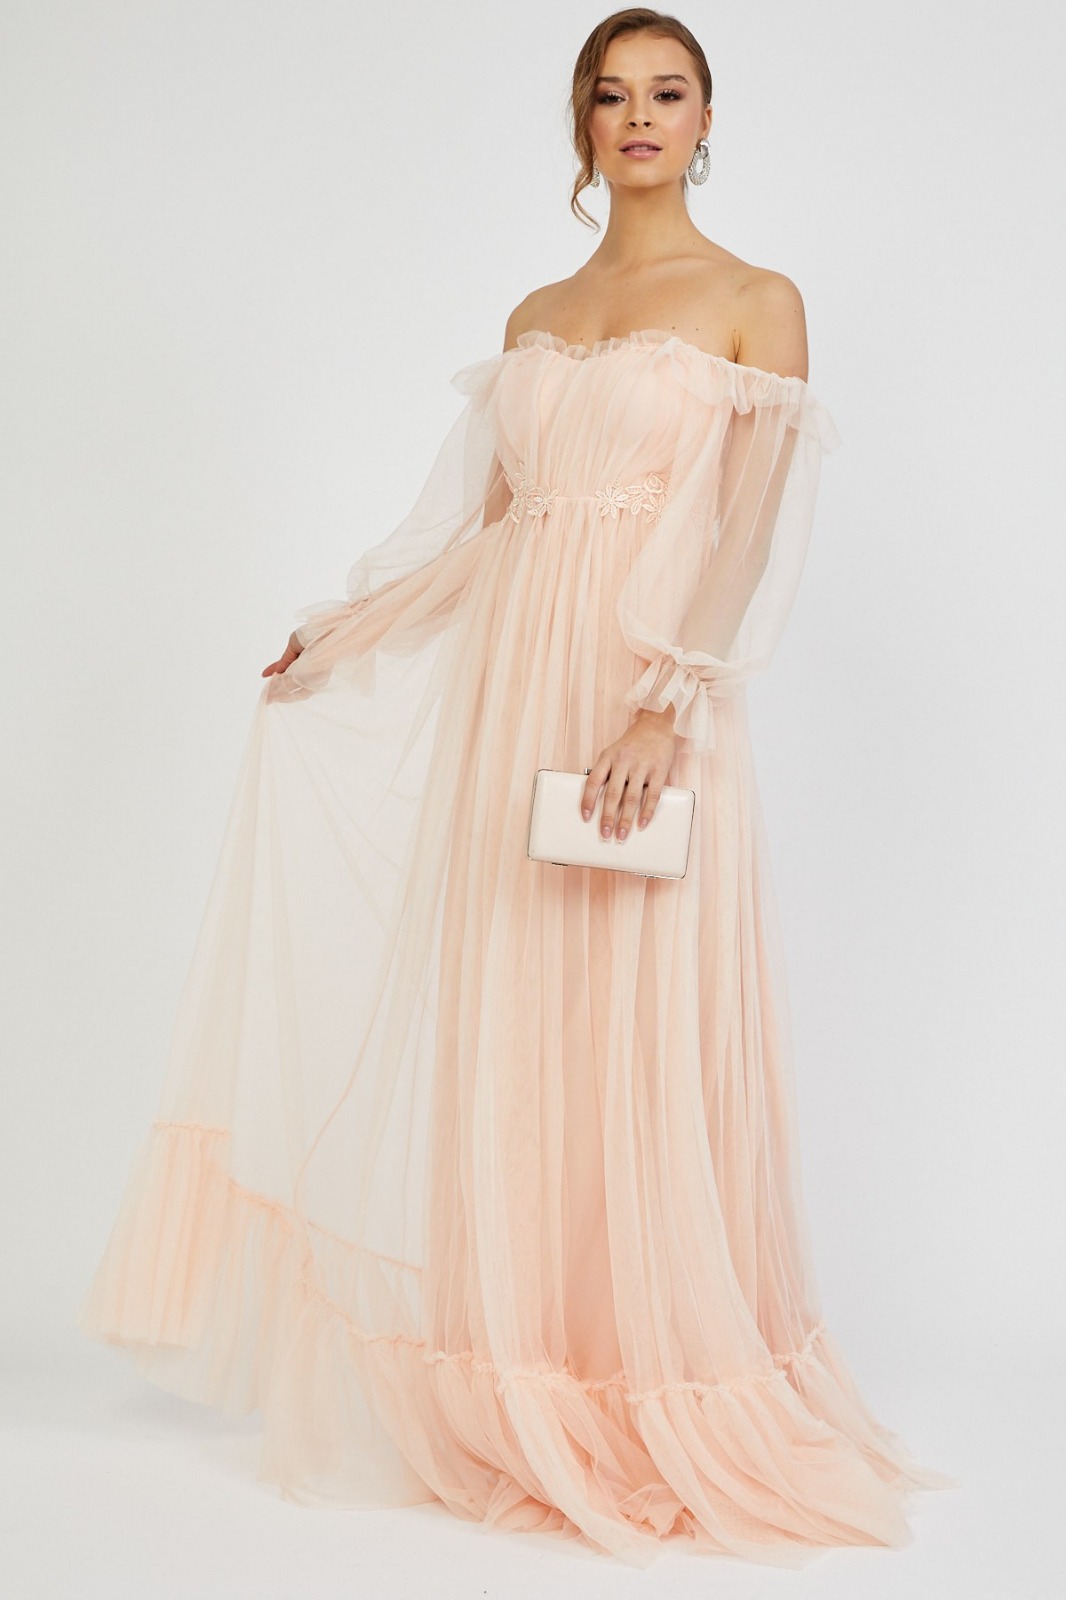 Almira Bayan Tül Detay Tasarım Abiye Elbise (0168)